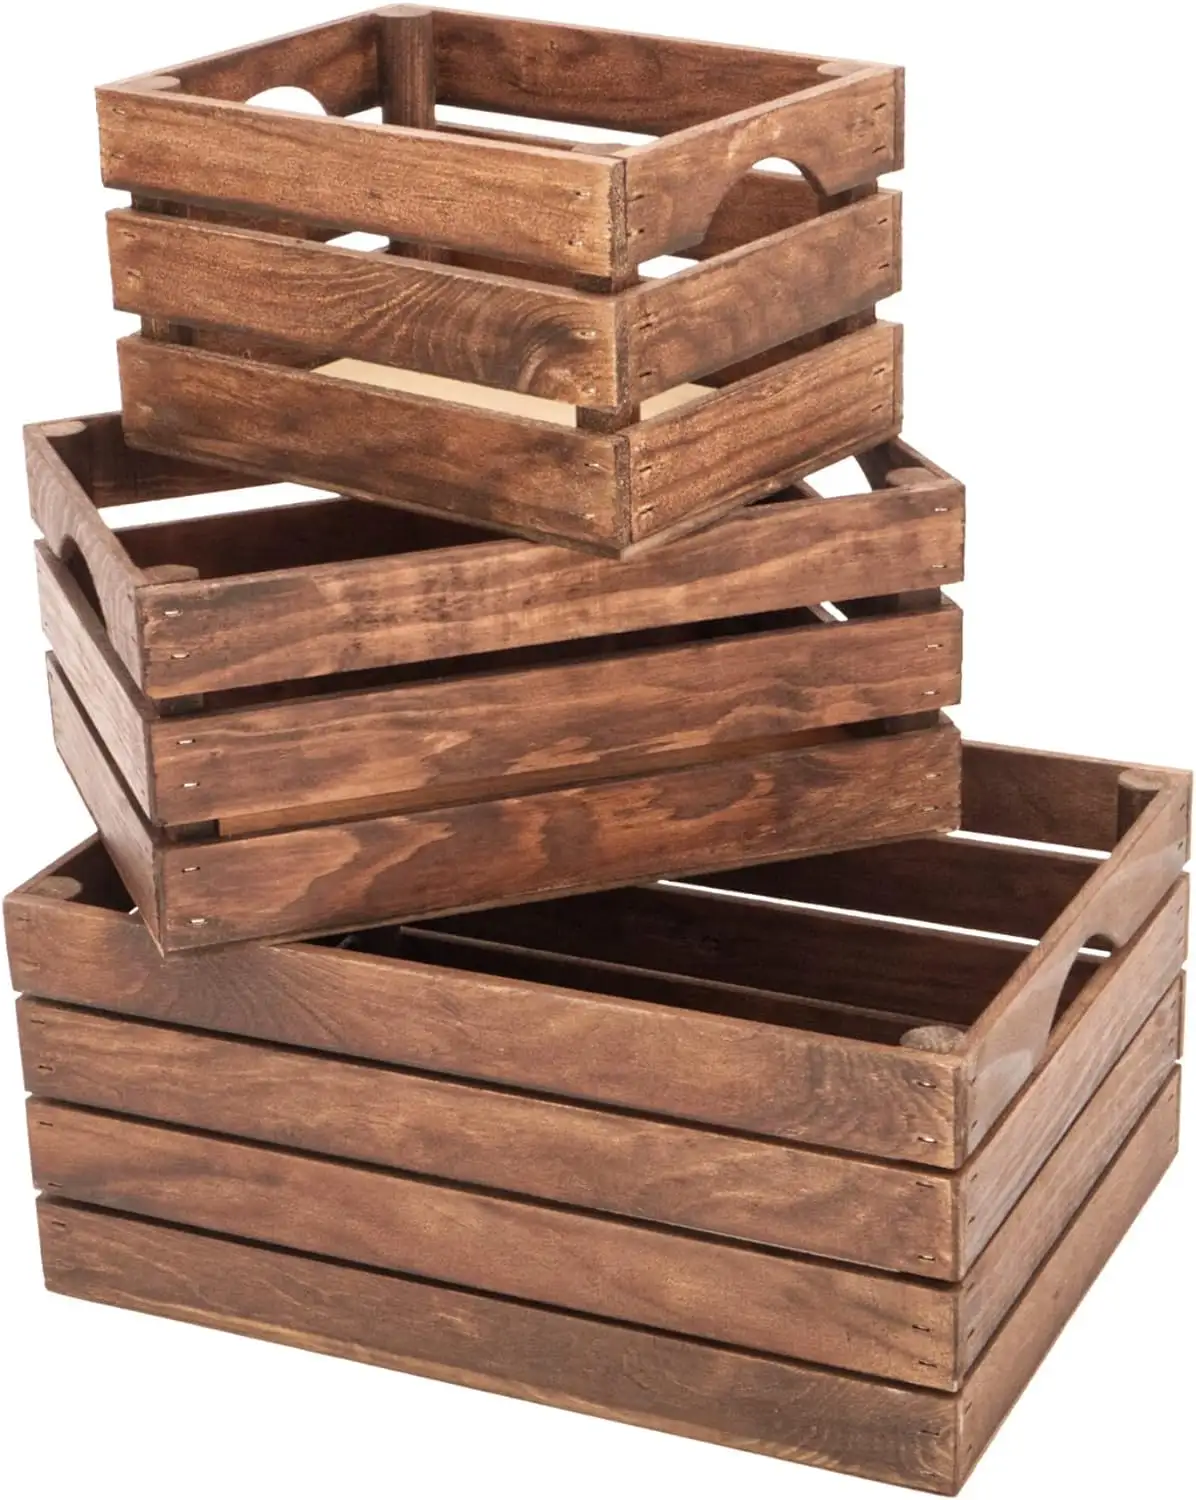 Peti kayu pedesaan untuk tampilan dekoratif antik, set peti bersarang untuk penyimpanan kotak kayu terbuat dari kayu 100%